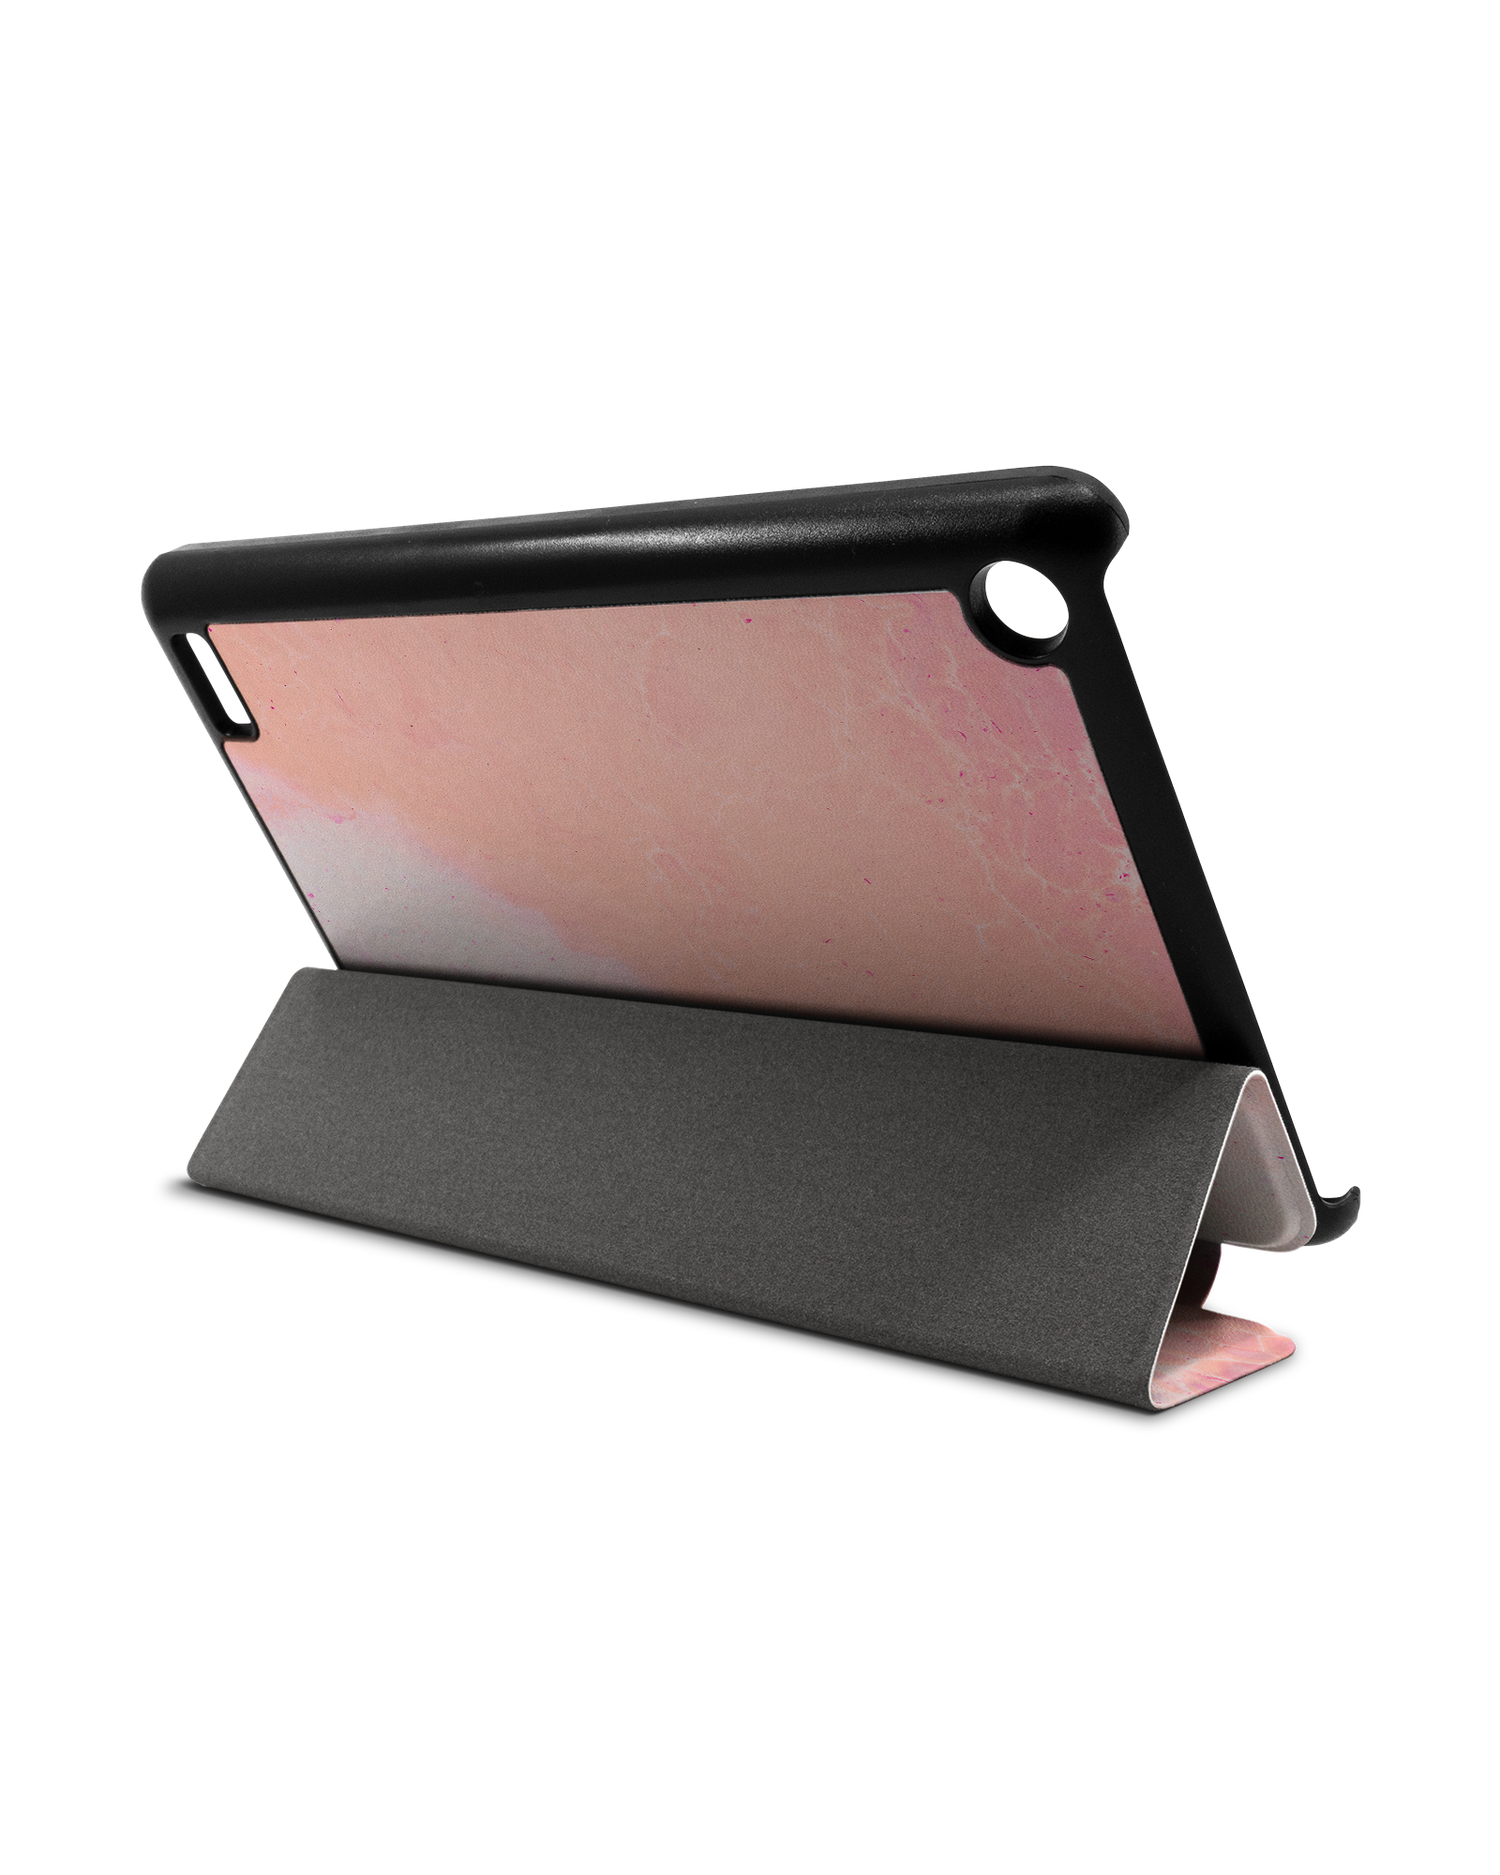 Peaches & Cream Marble Tablet Smart Case für Amazon Fire 7: Aufgestellt im Querformat